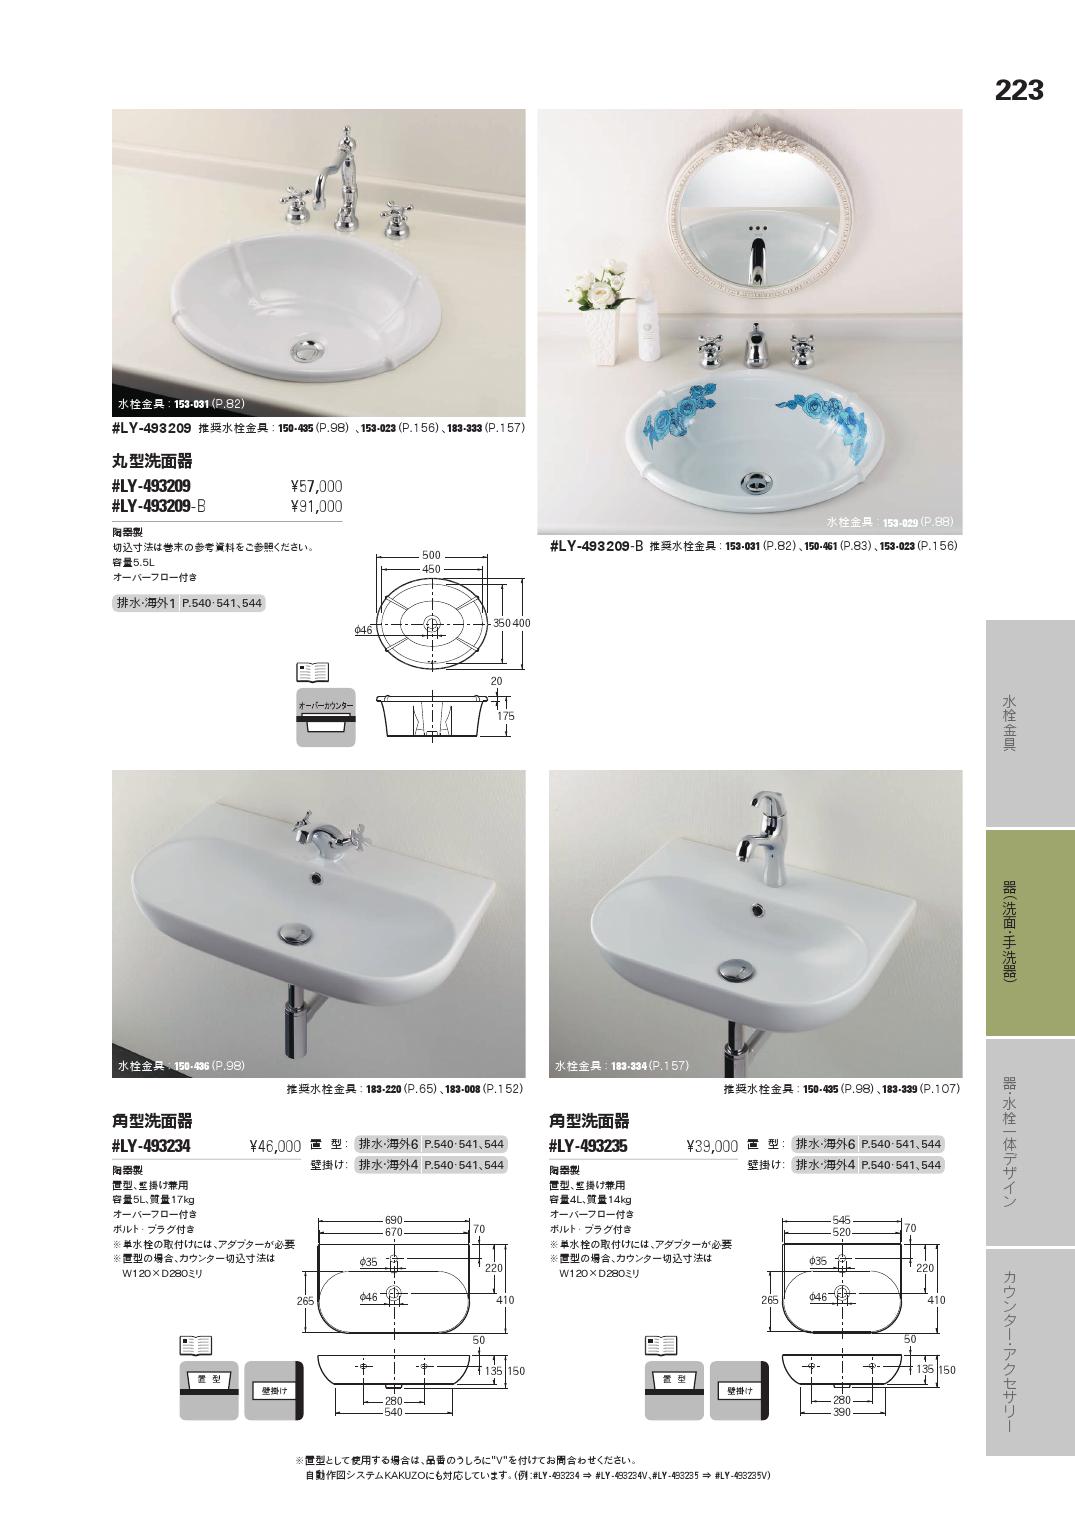 カクダイ ()カクダイ 丸型洗面器 #LY-493202 (E) 浴室、浴槽、洗面所